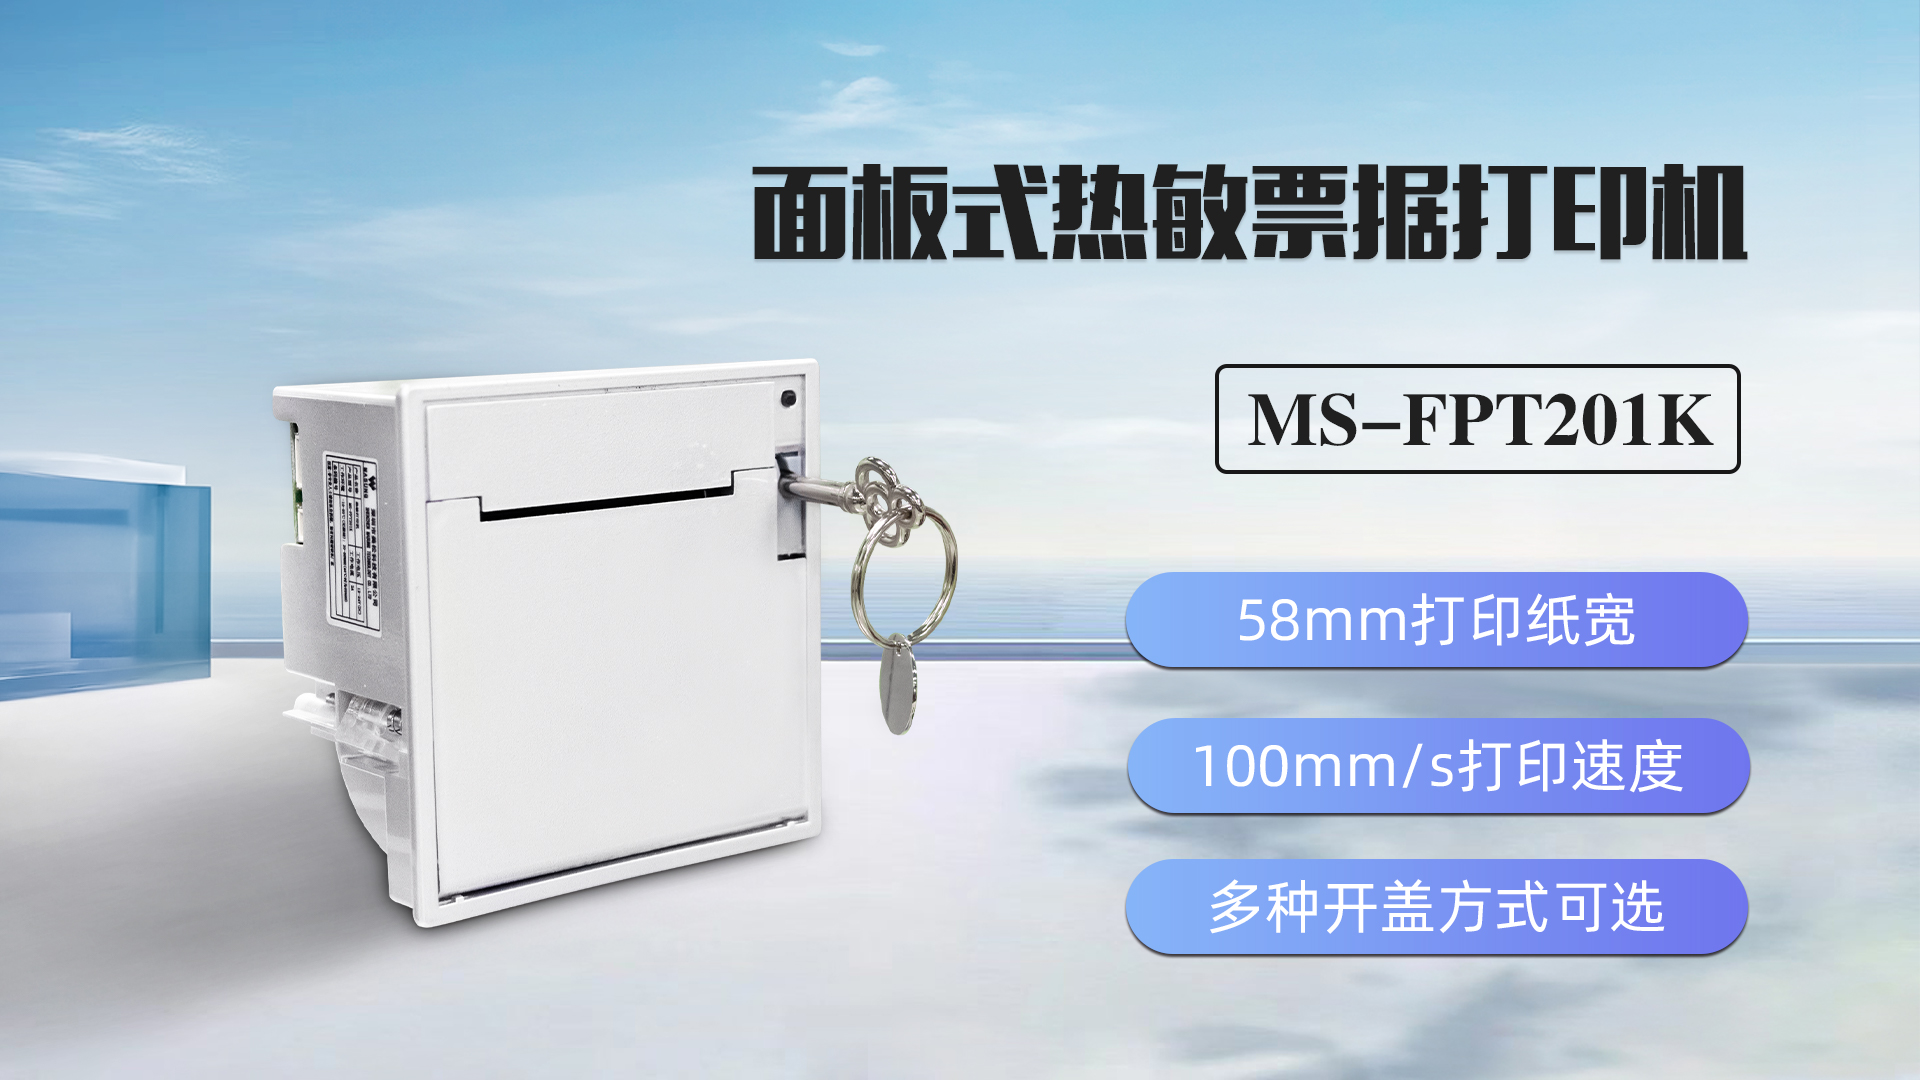 美松打印机MS-FPT201K为超市自助机提供解决方案